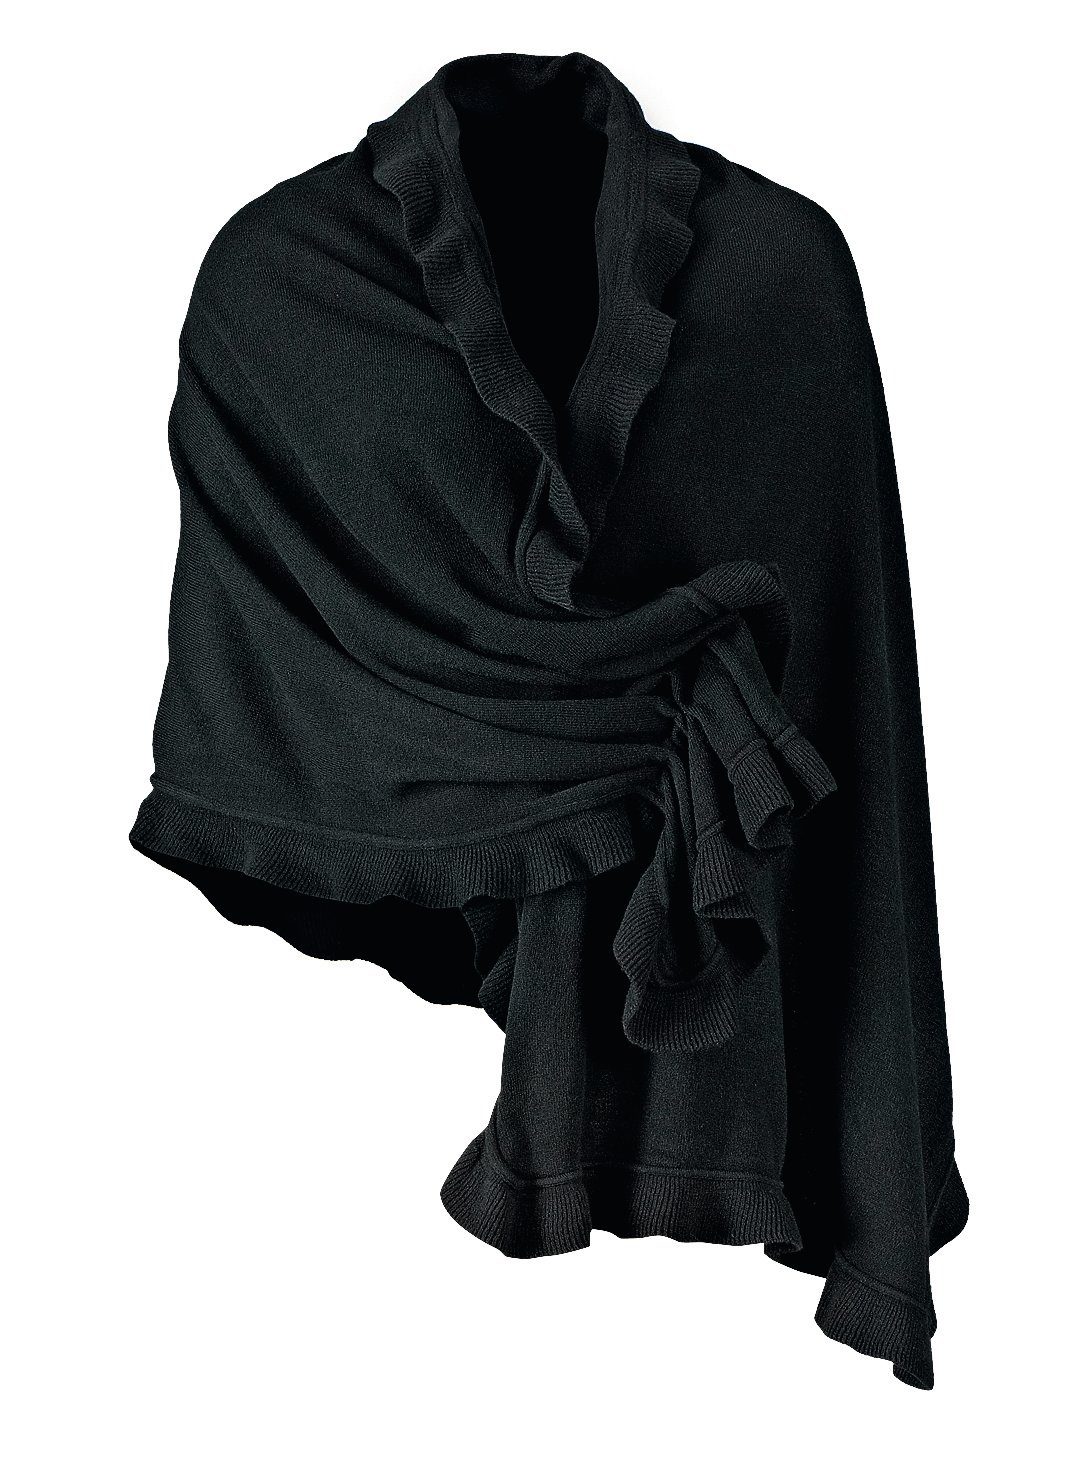 Schal in schwarz online kaufen | OTTO